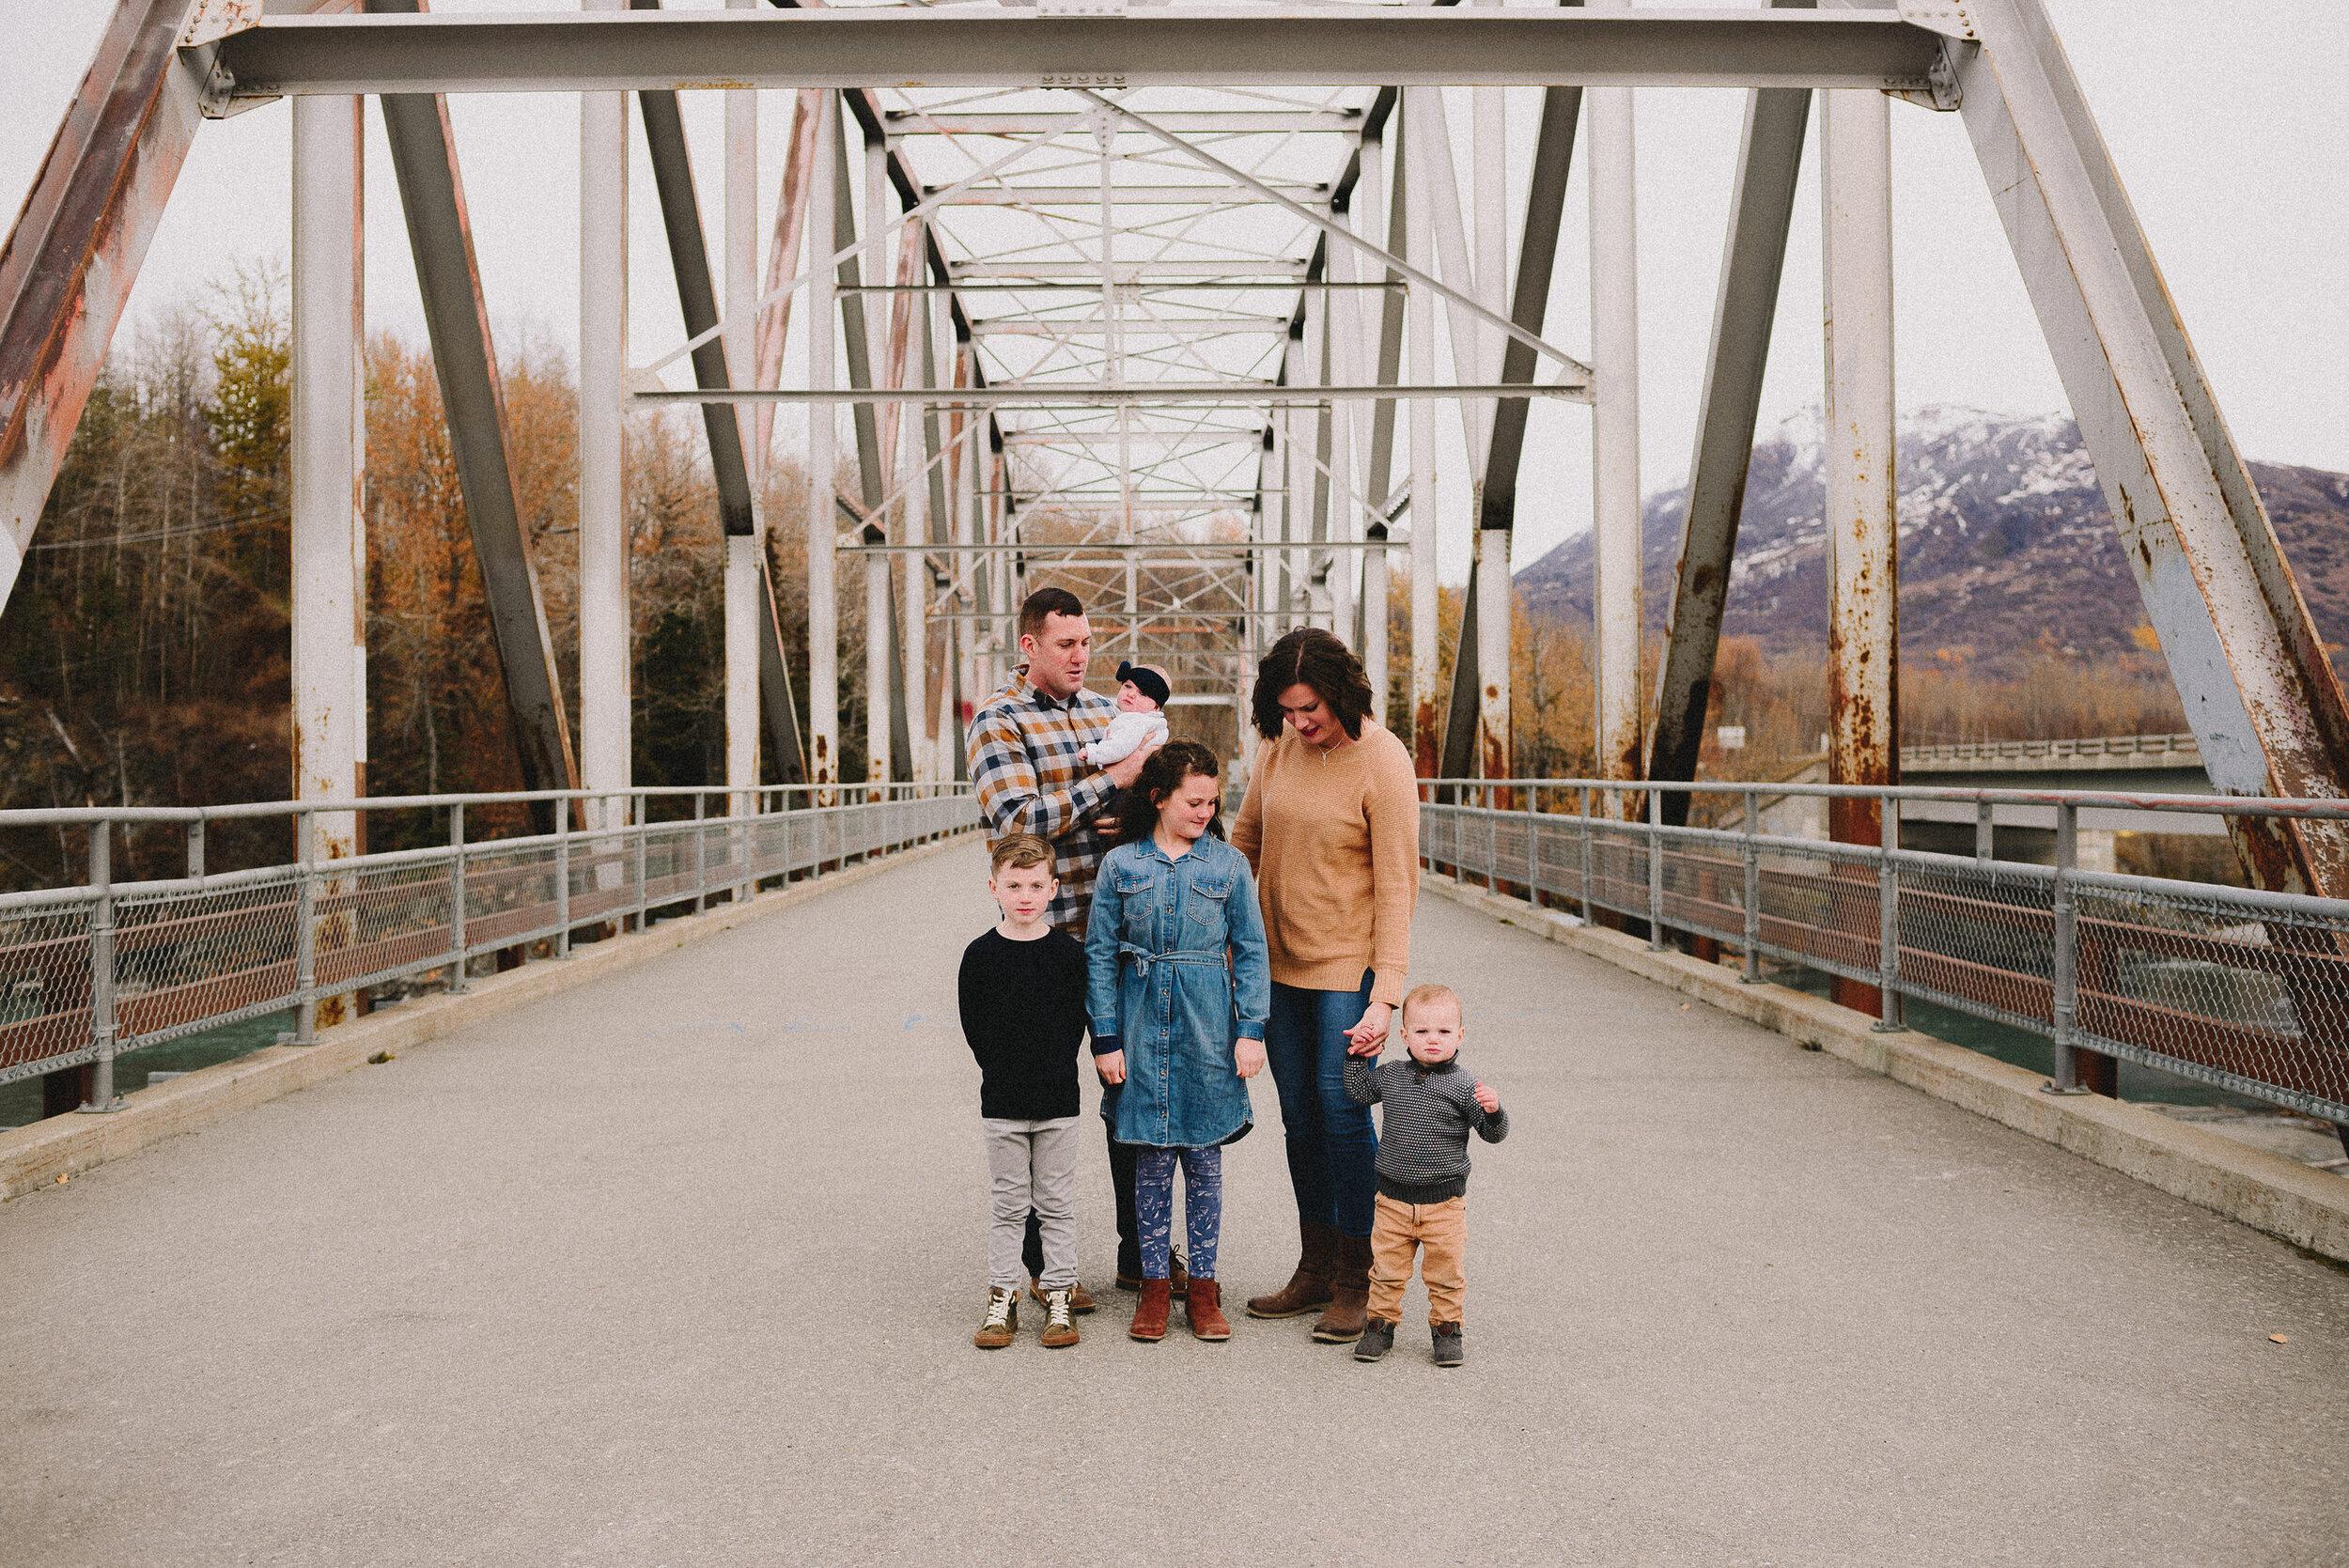 old-matanuska-bridge-palmer-alaska-family-session-way-up-north-photography (1).jpg